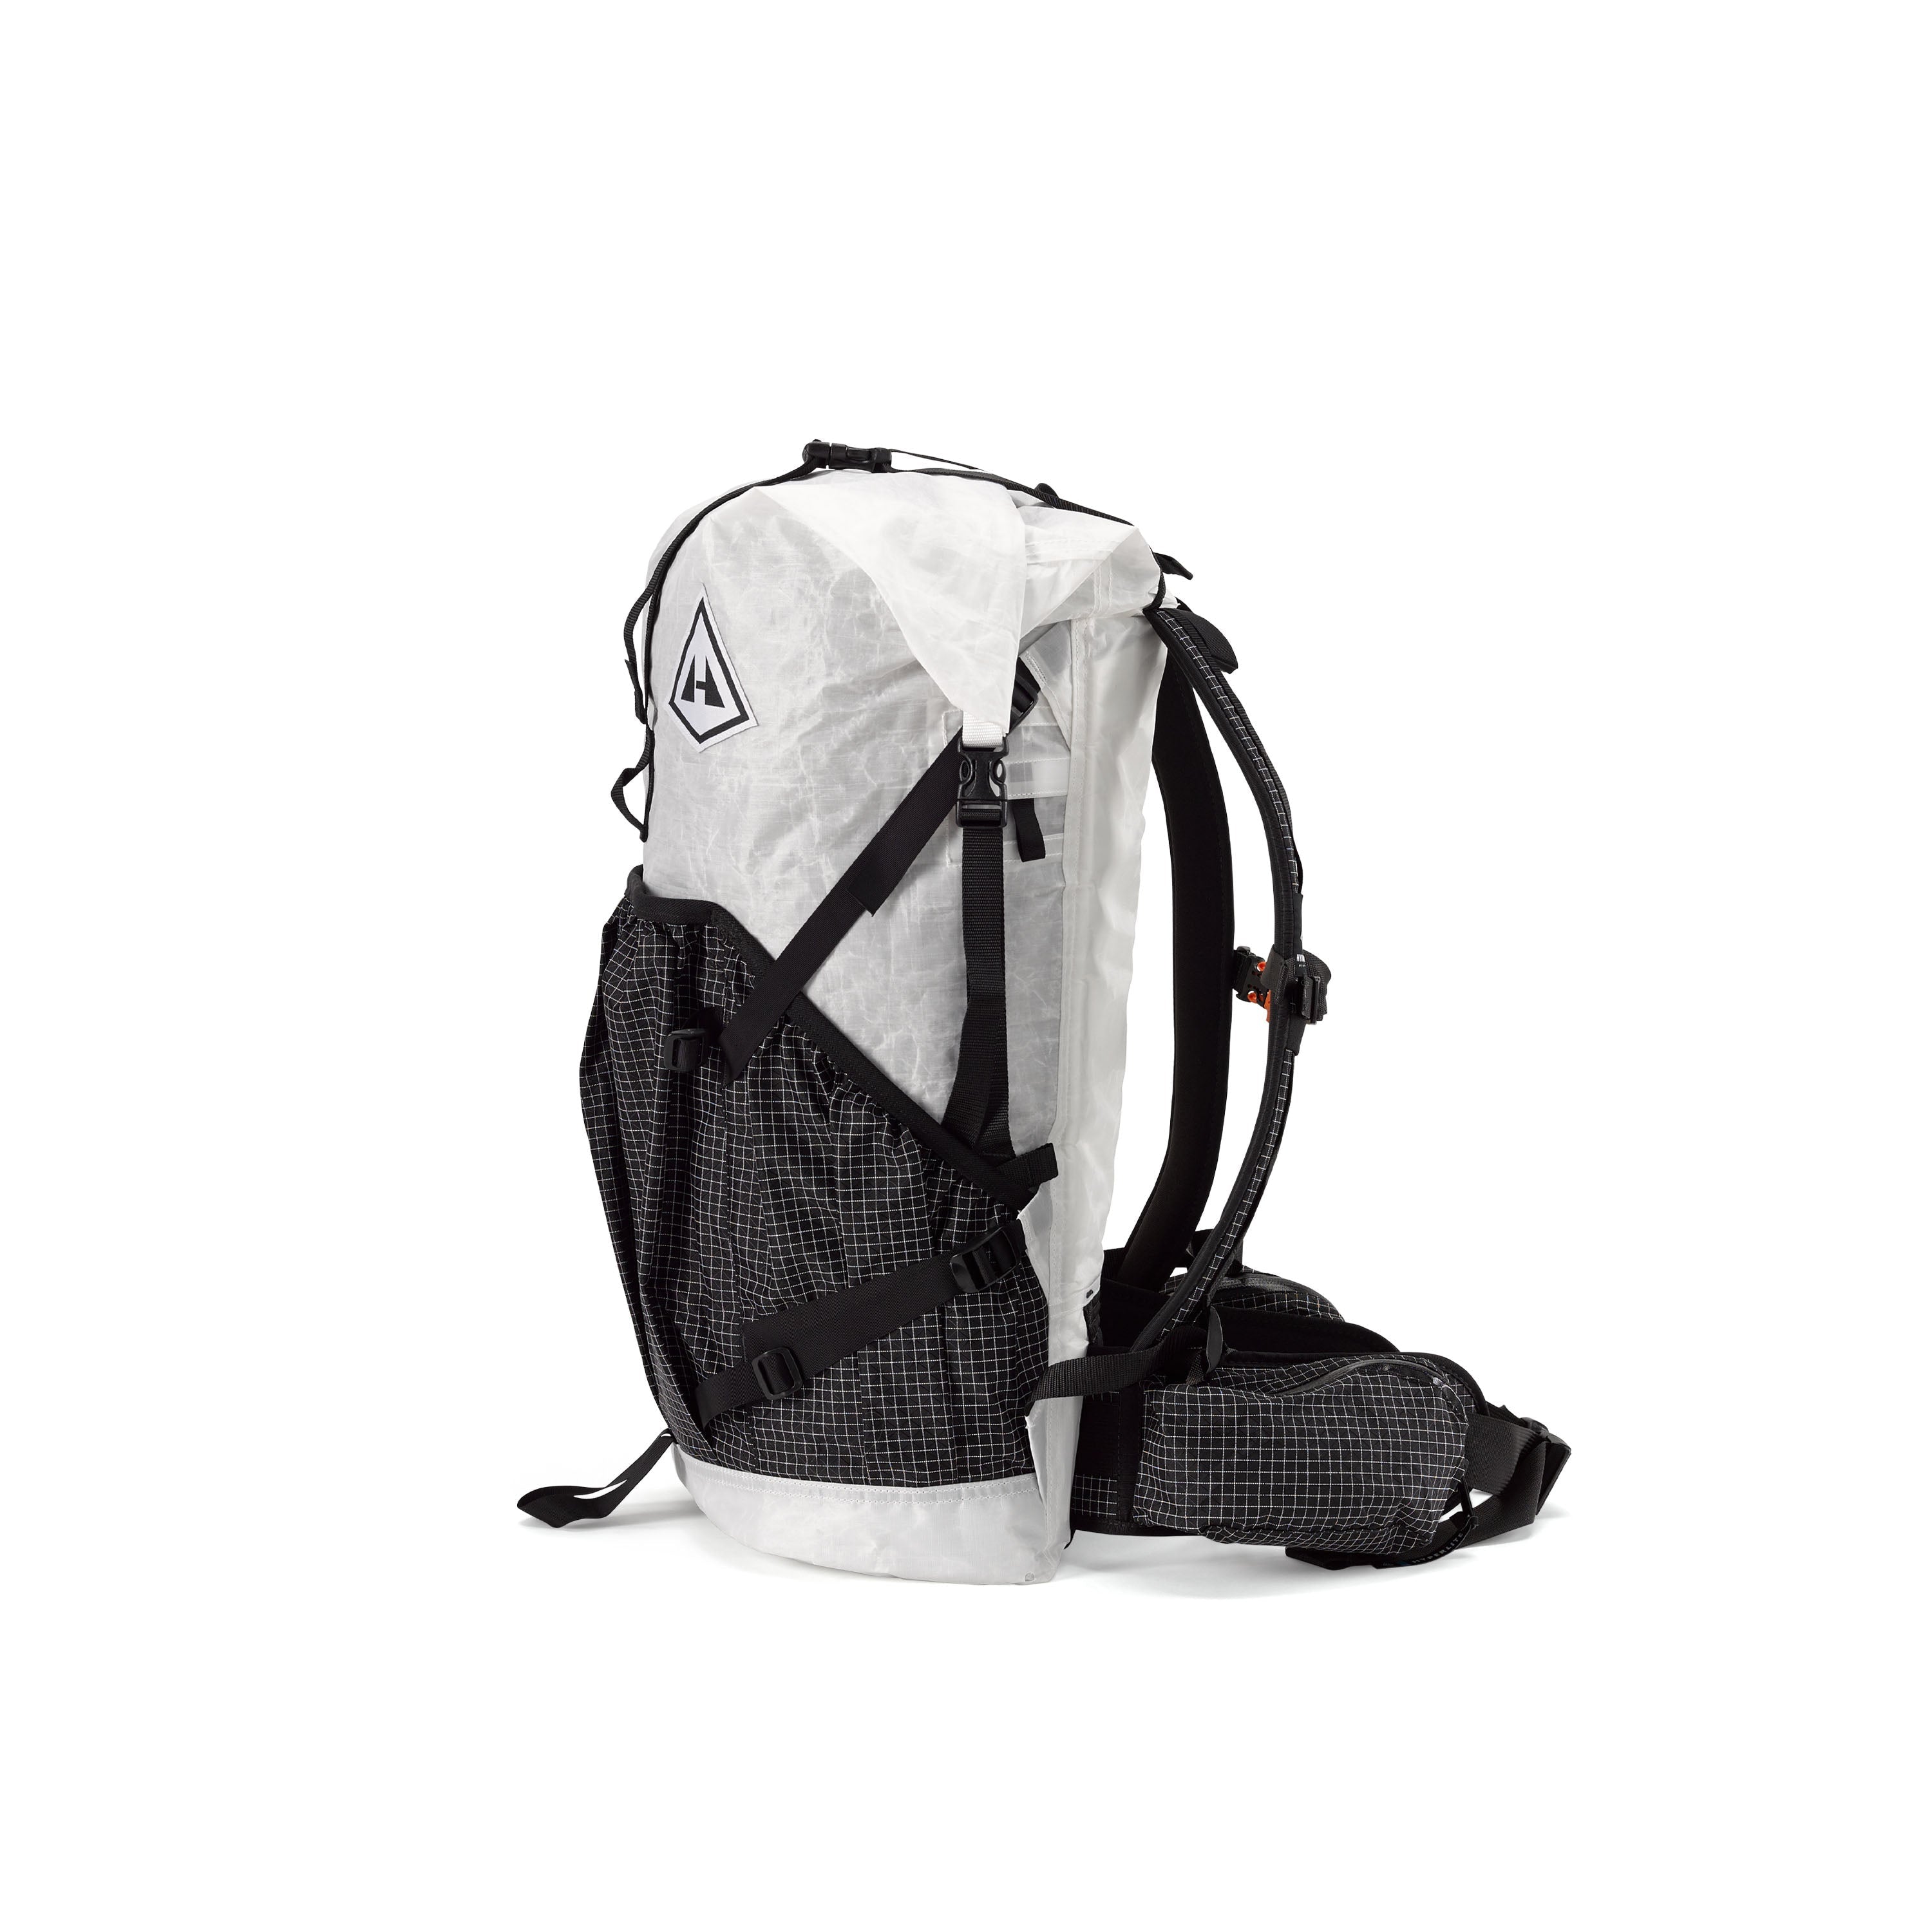 Hyperlite Mountain Gear Southwest 40 | 40L Ultralight Backpack ...